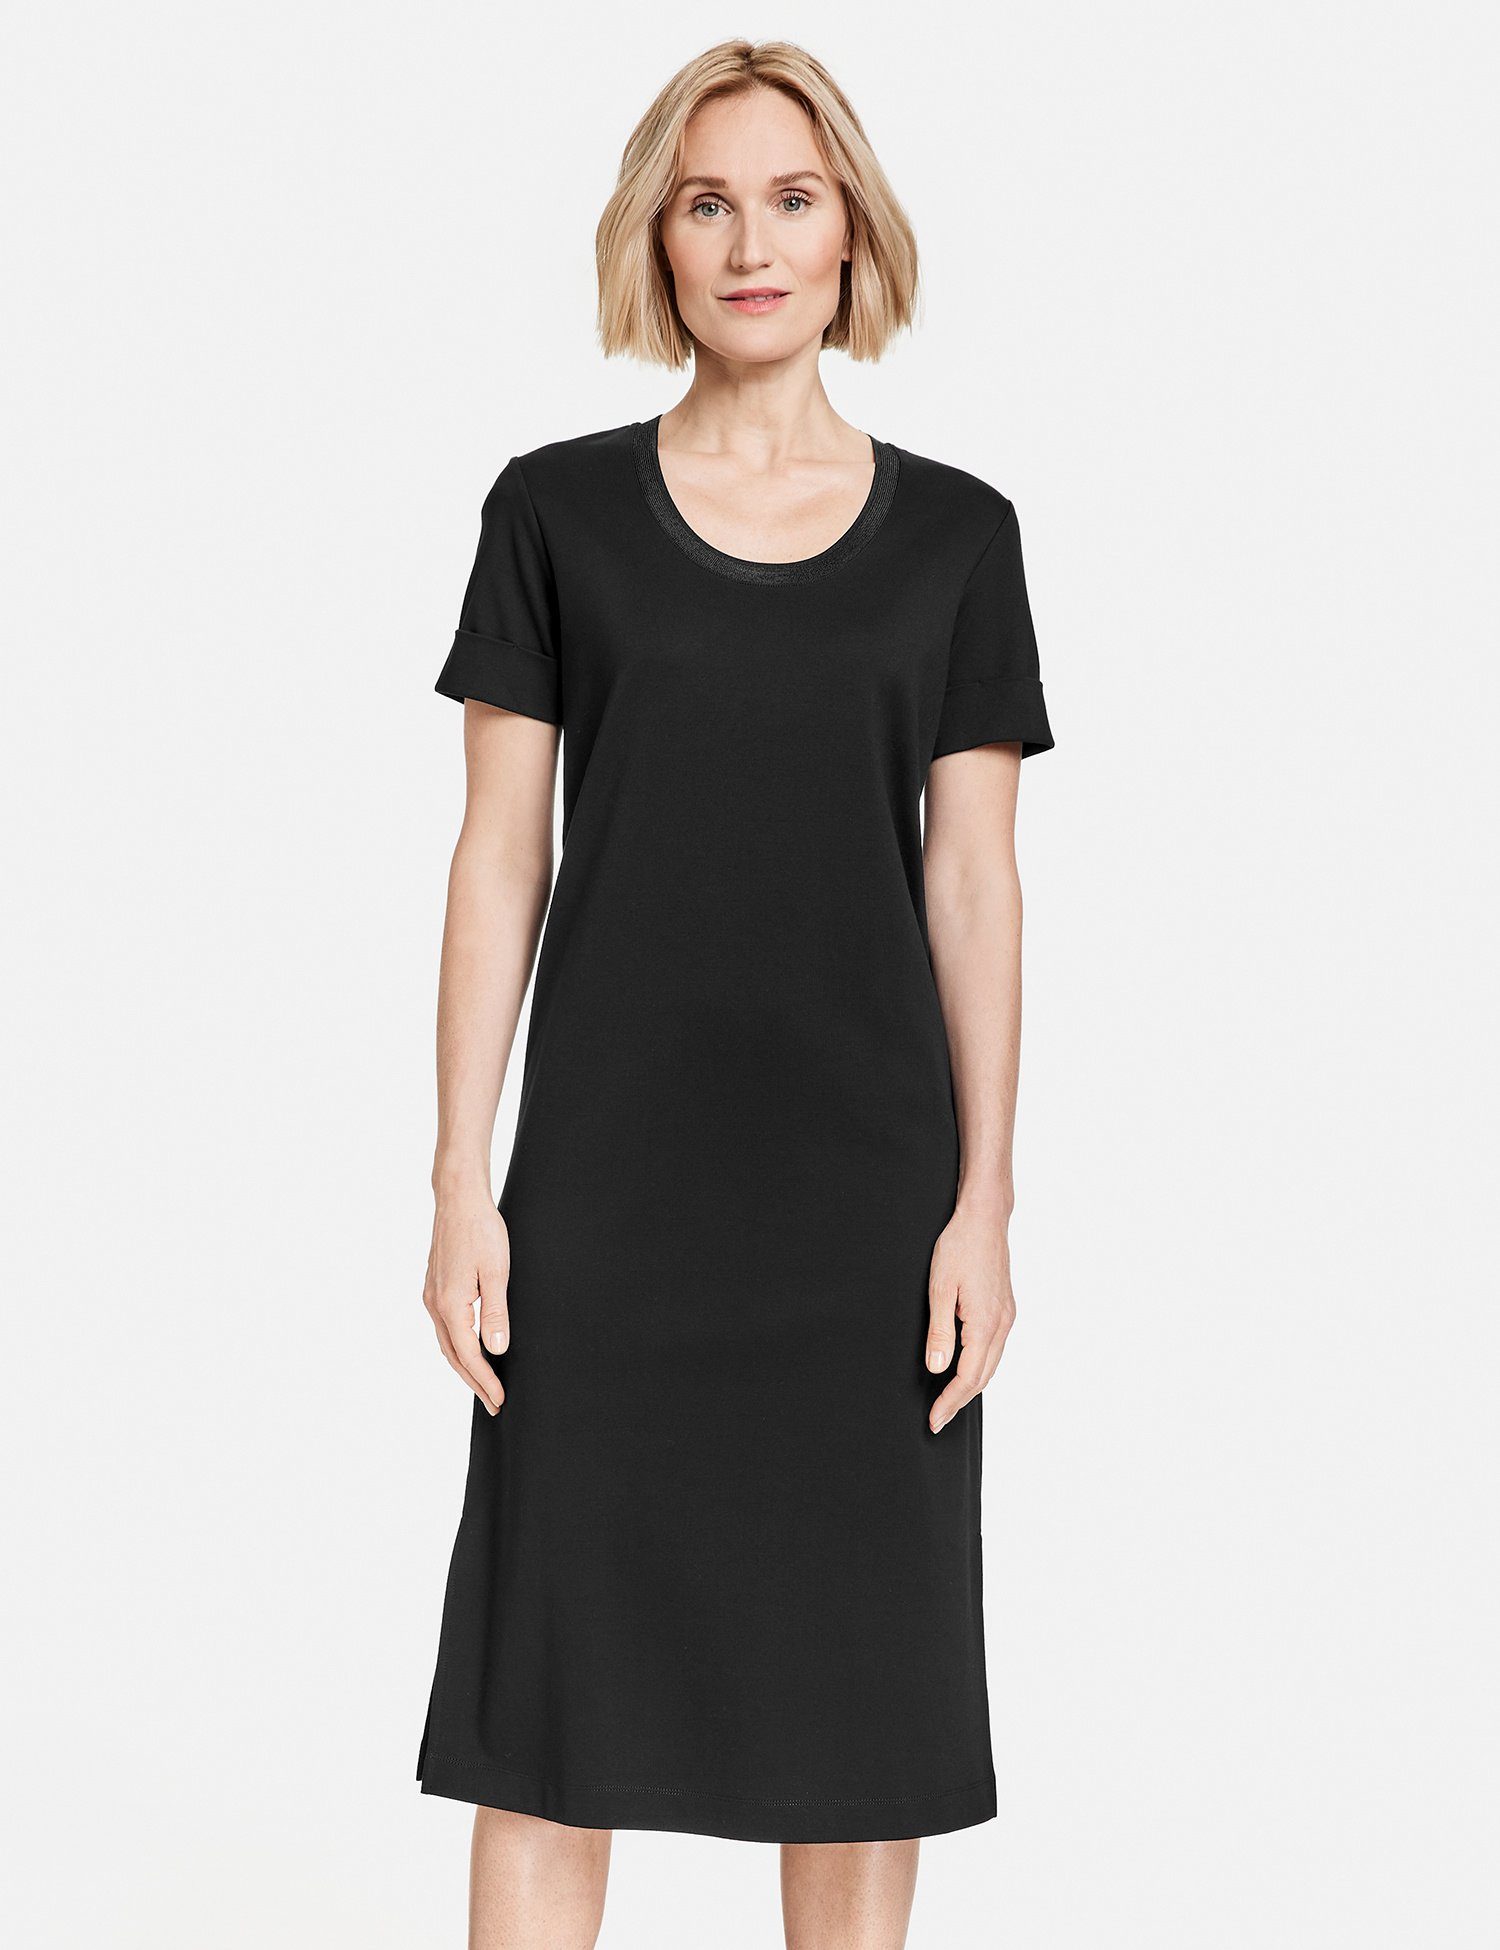 GERRY WEBER Midikleid Schlichtes Kleid mit schimmerndem Ausschnitt Schwarz